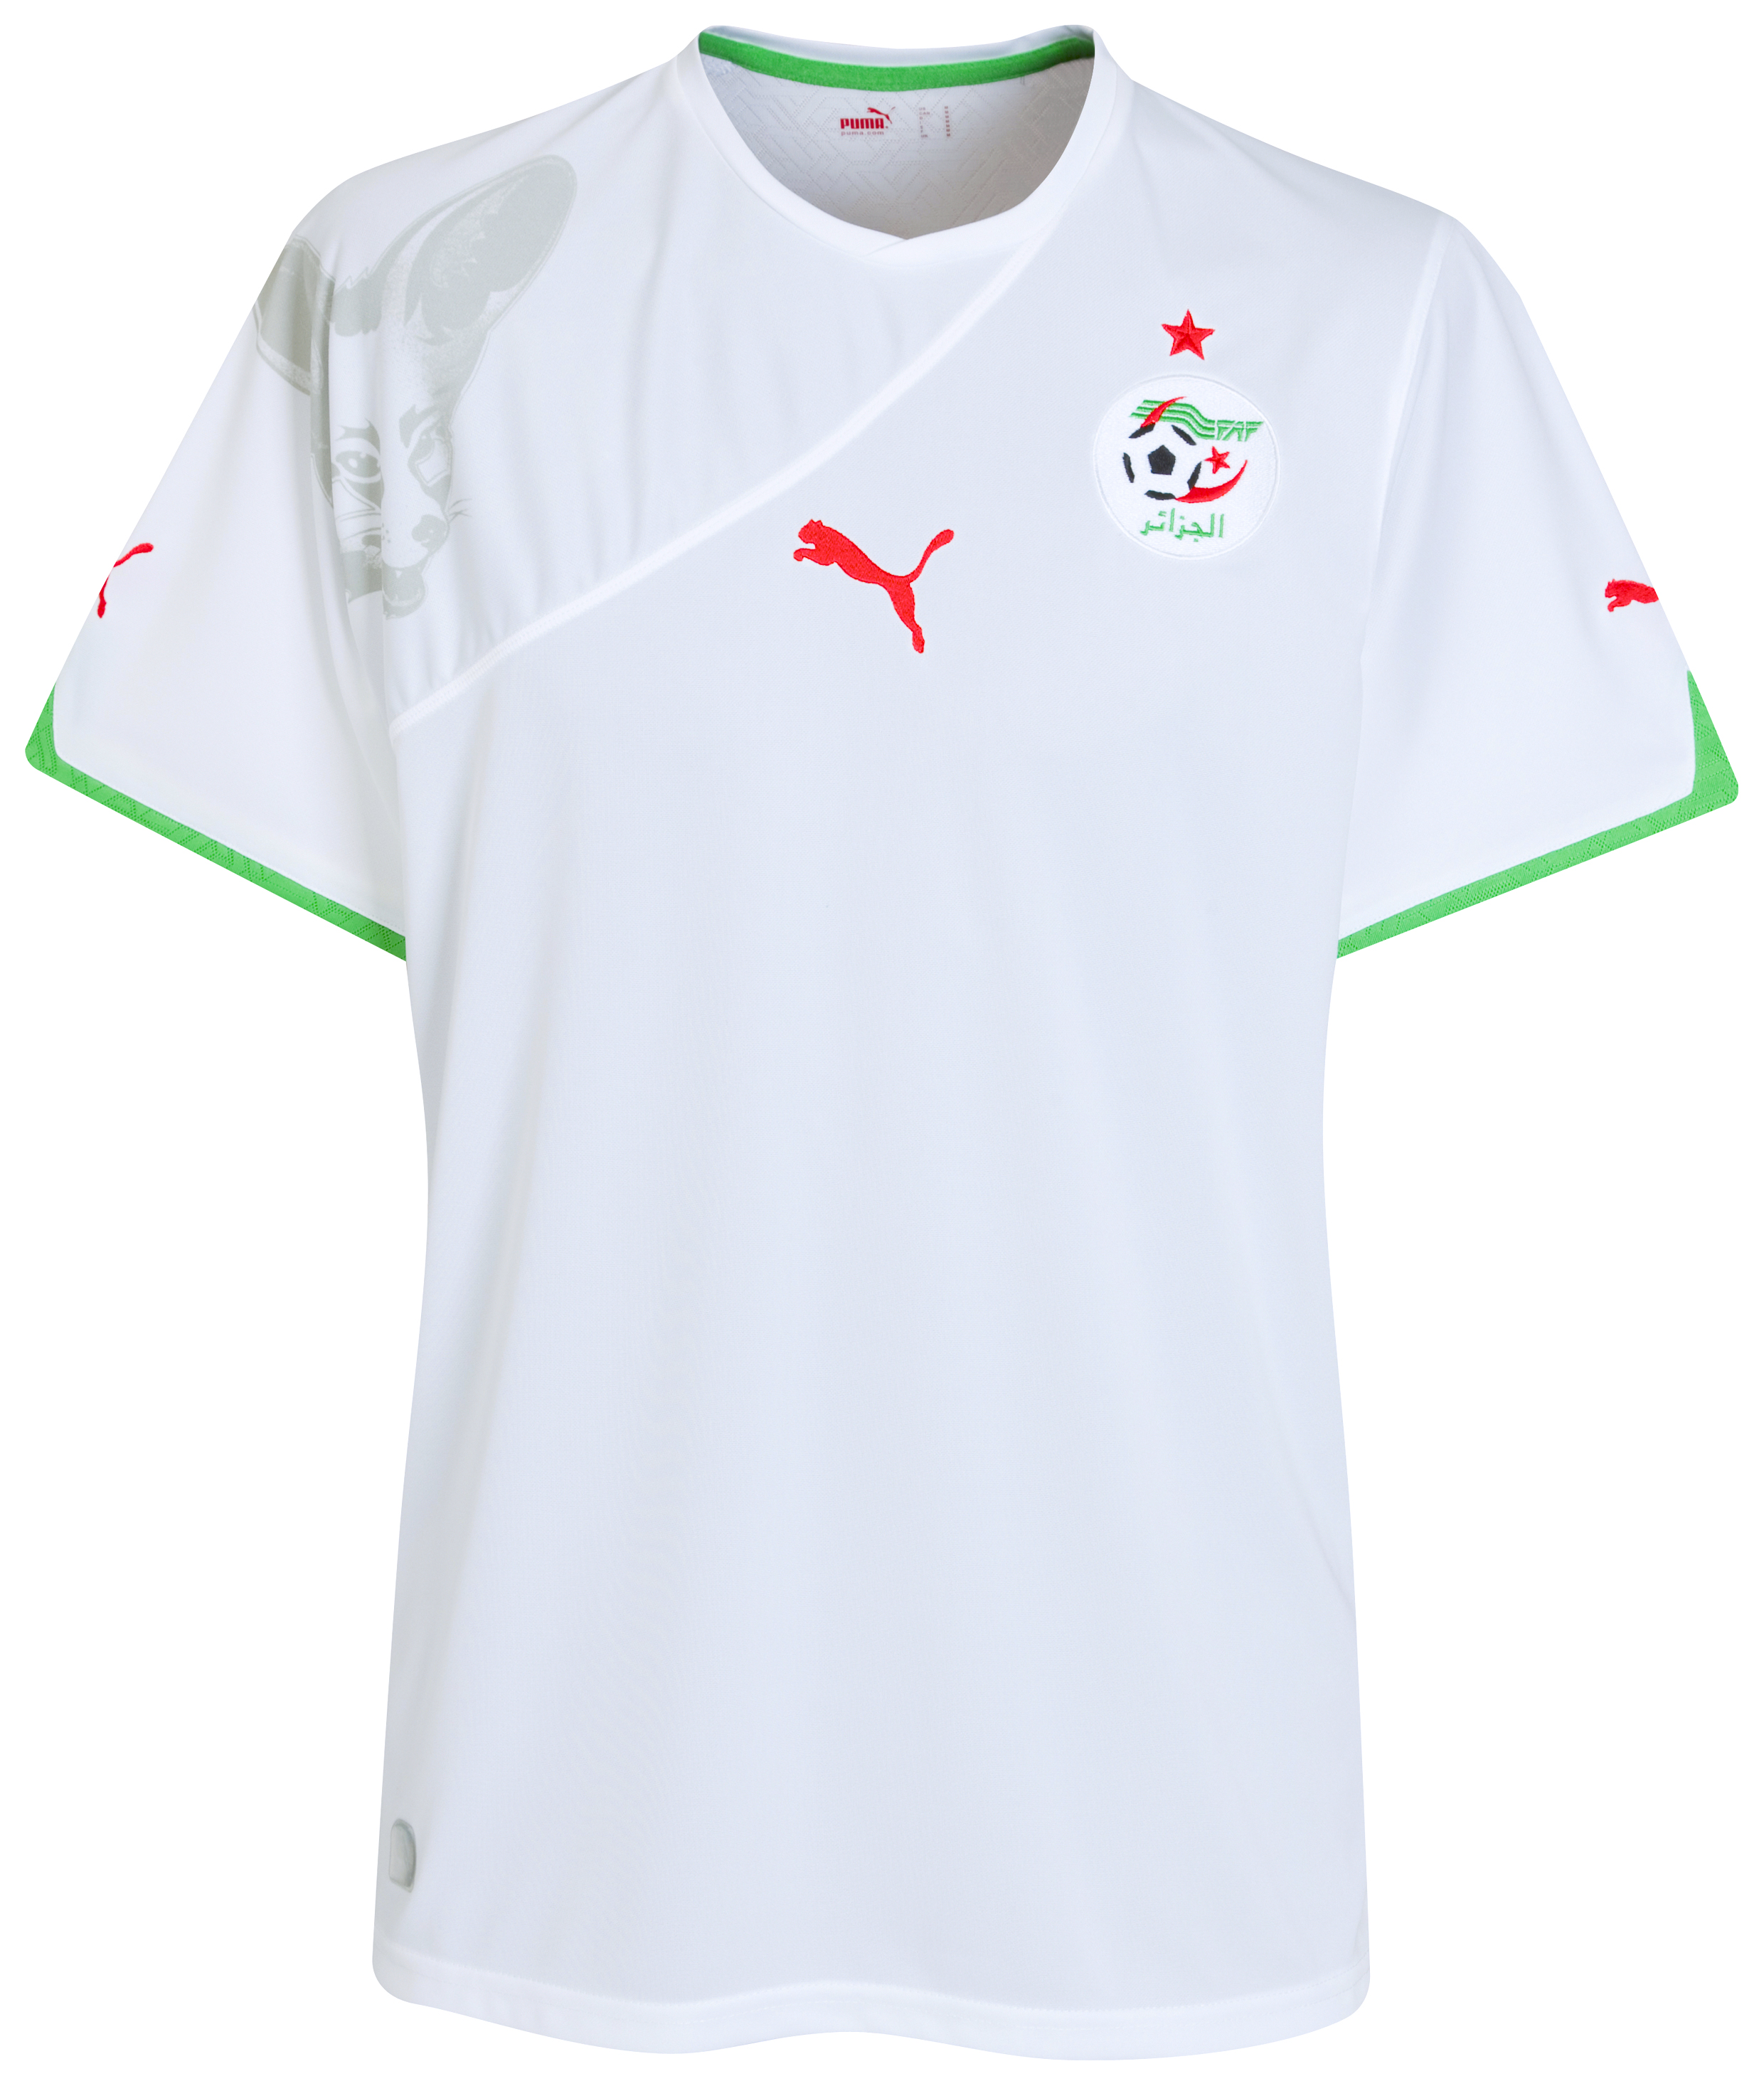 الملابس الخاصة بالمنتخبات في كأس العالم (جنوب أفريقيا 2010) Kb-70198